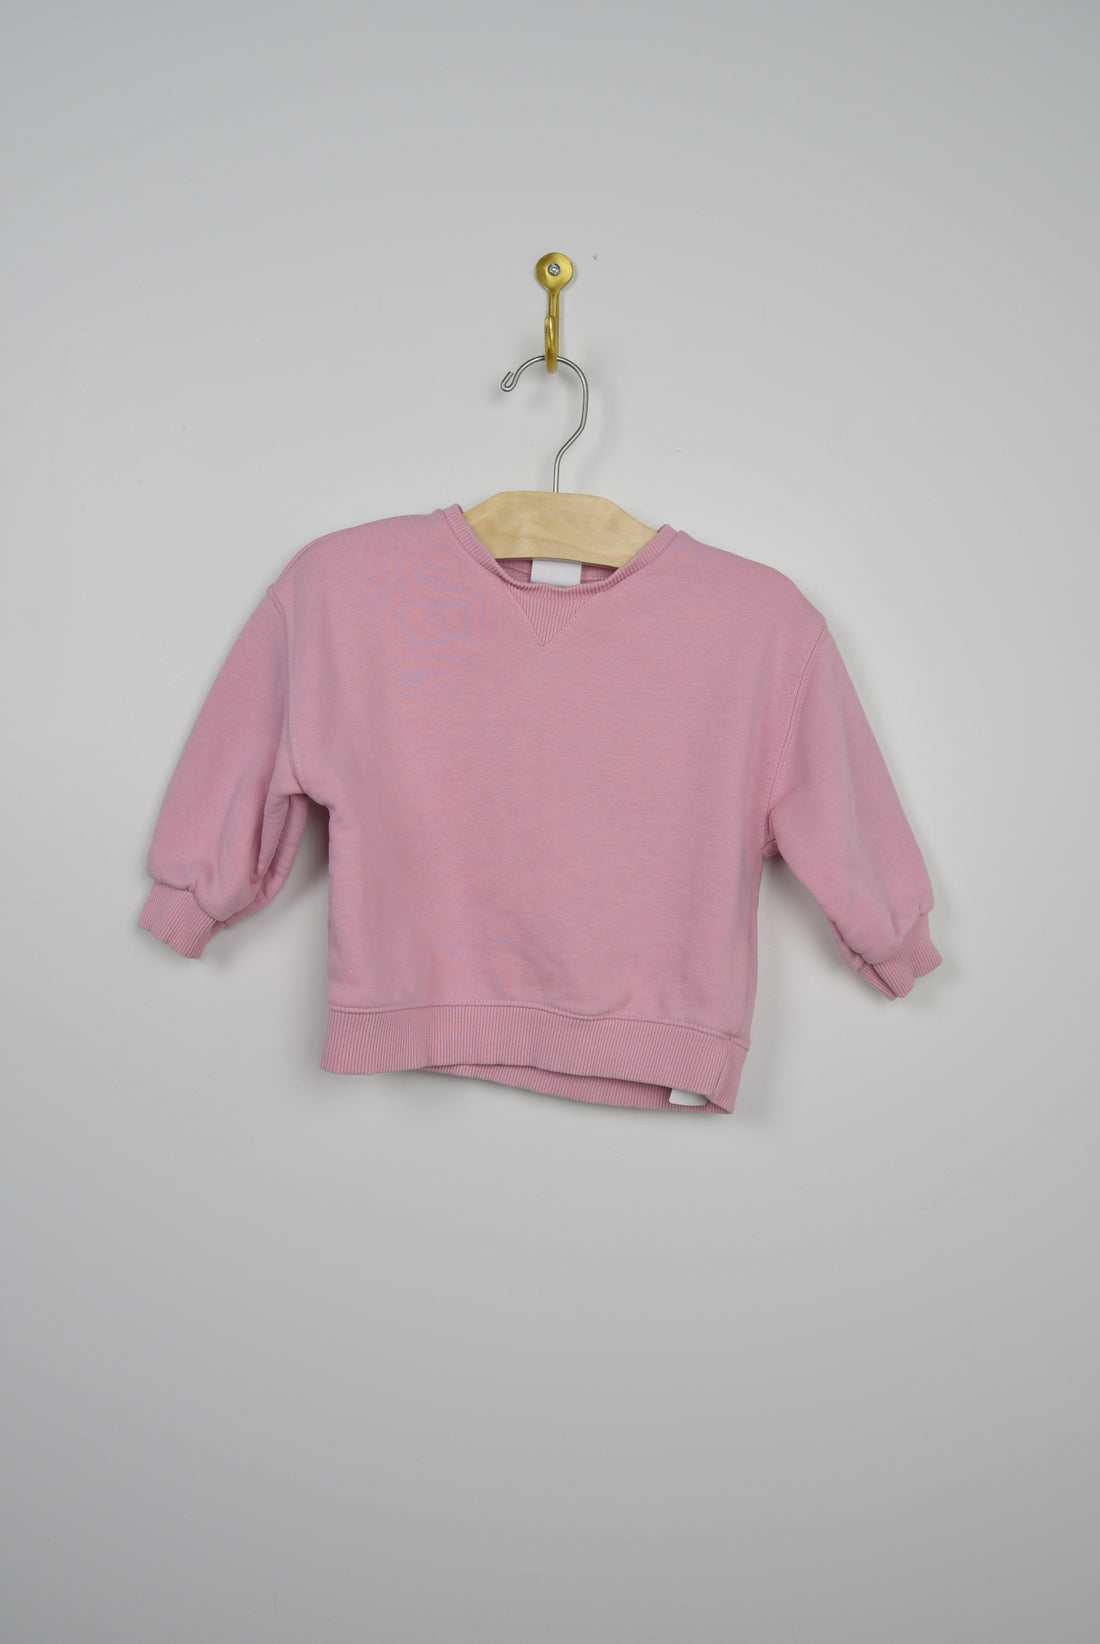 Zara Zara Pink Sweater - 12-18M